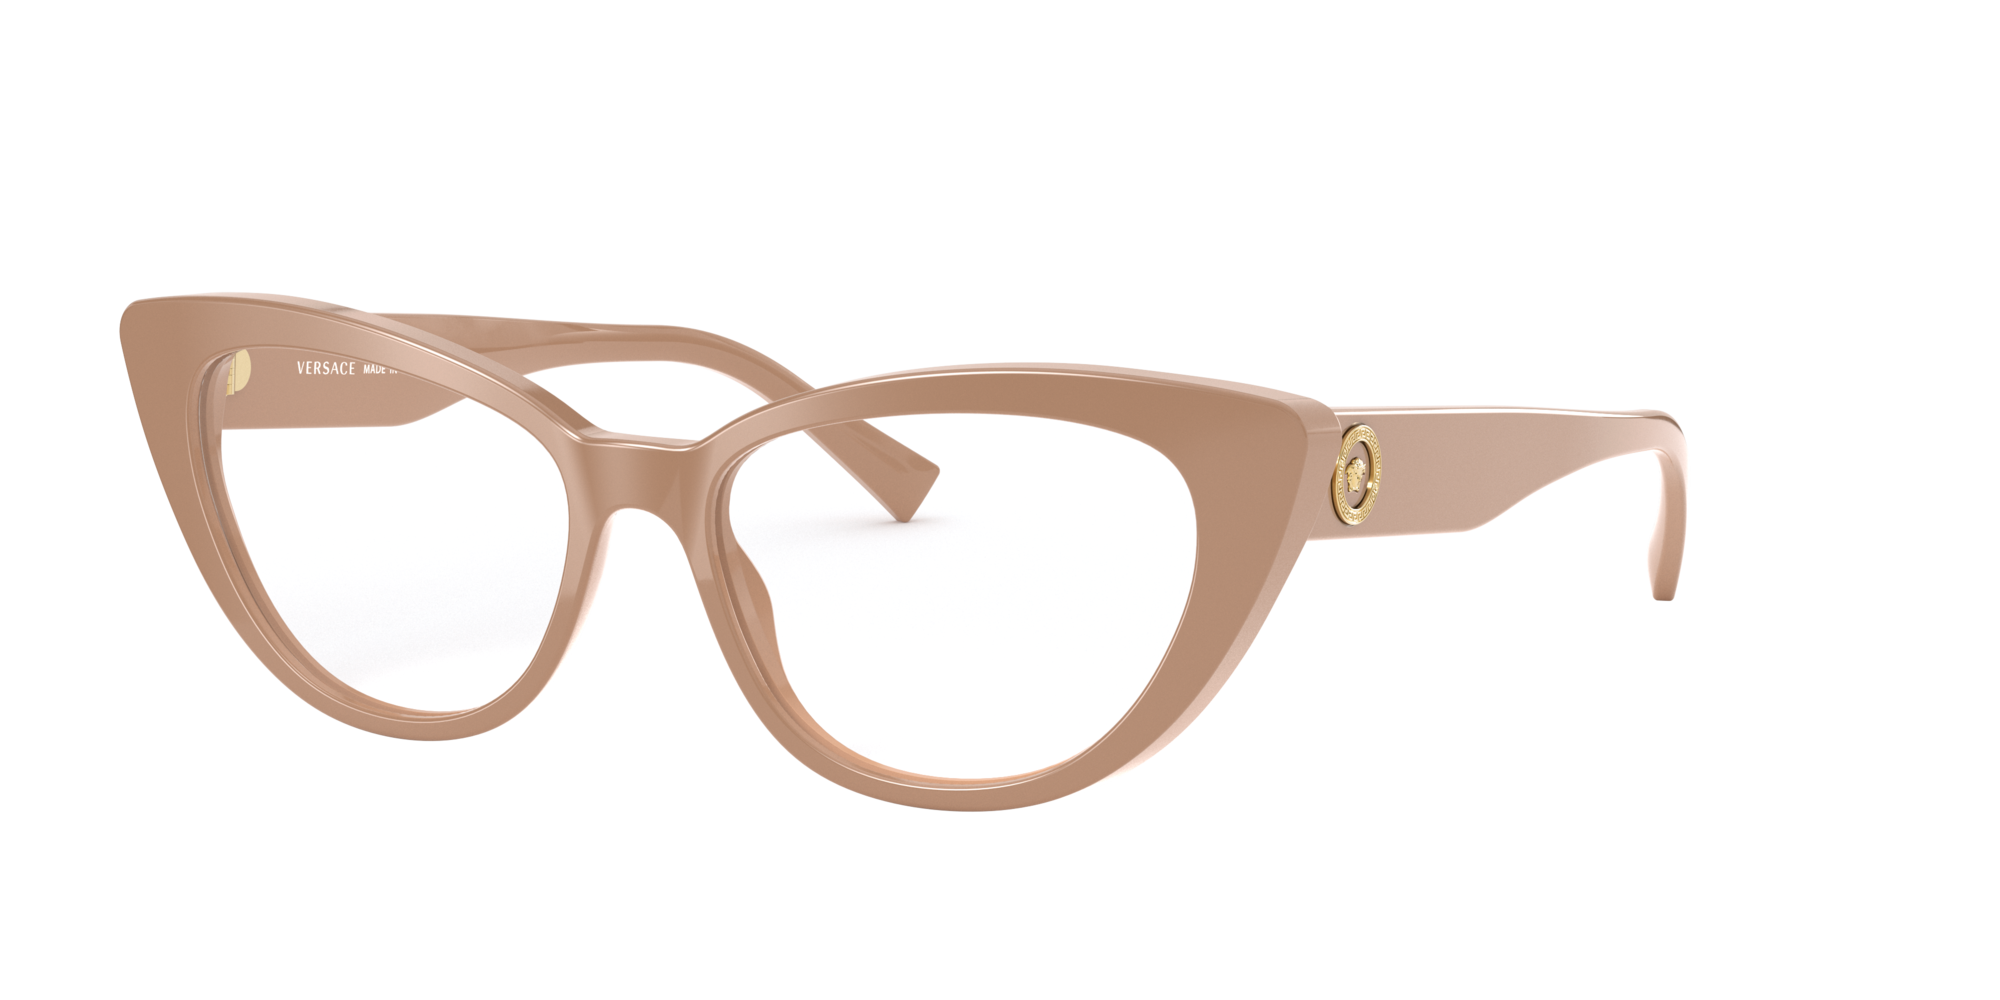 versace glasses opsm,OFF 70%,nalan.com.sg